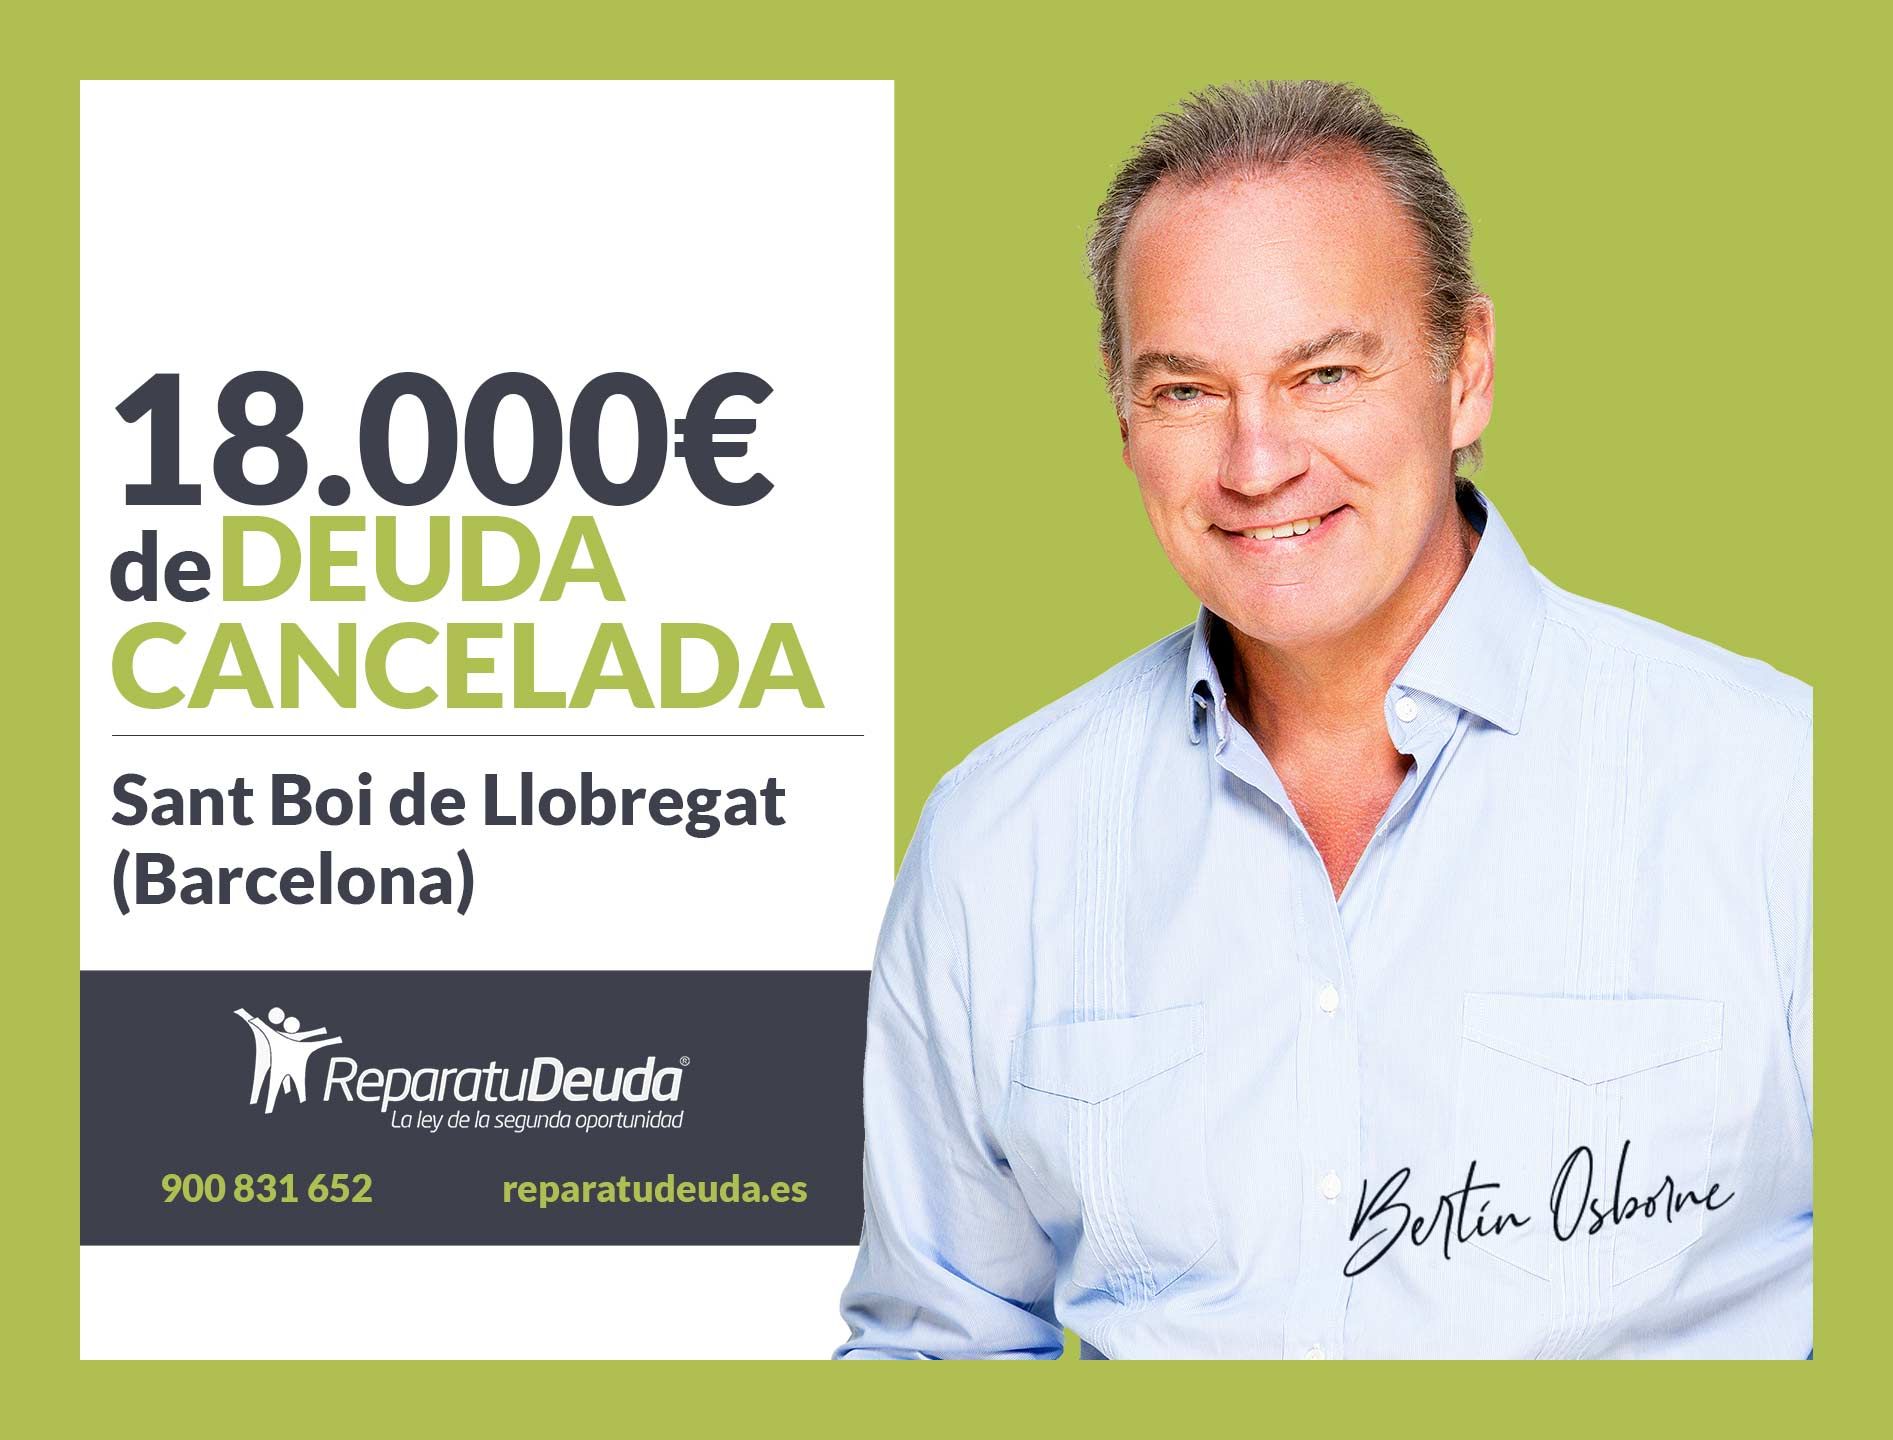 Repara tu Deuda cancela 18.000? en Sant Boi de Llobregat (Barcelona) con la Ley de Segunda Oportunidad